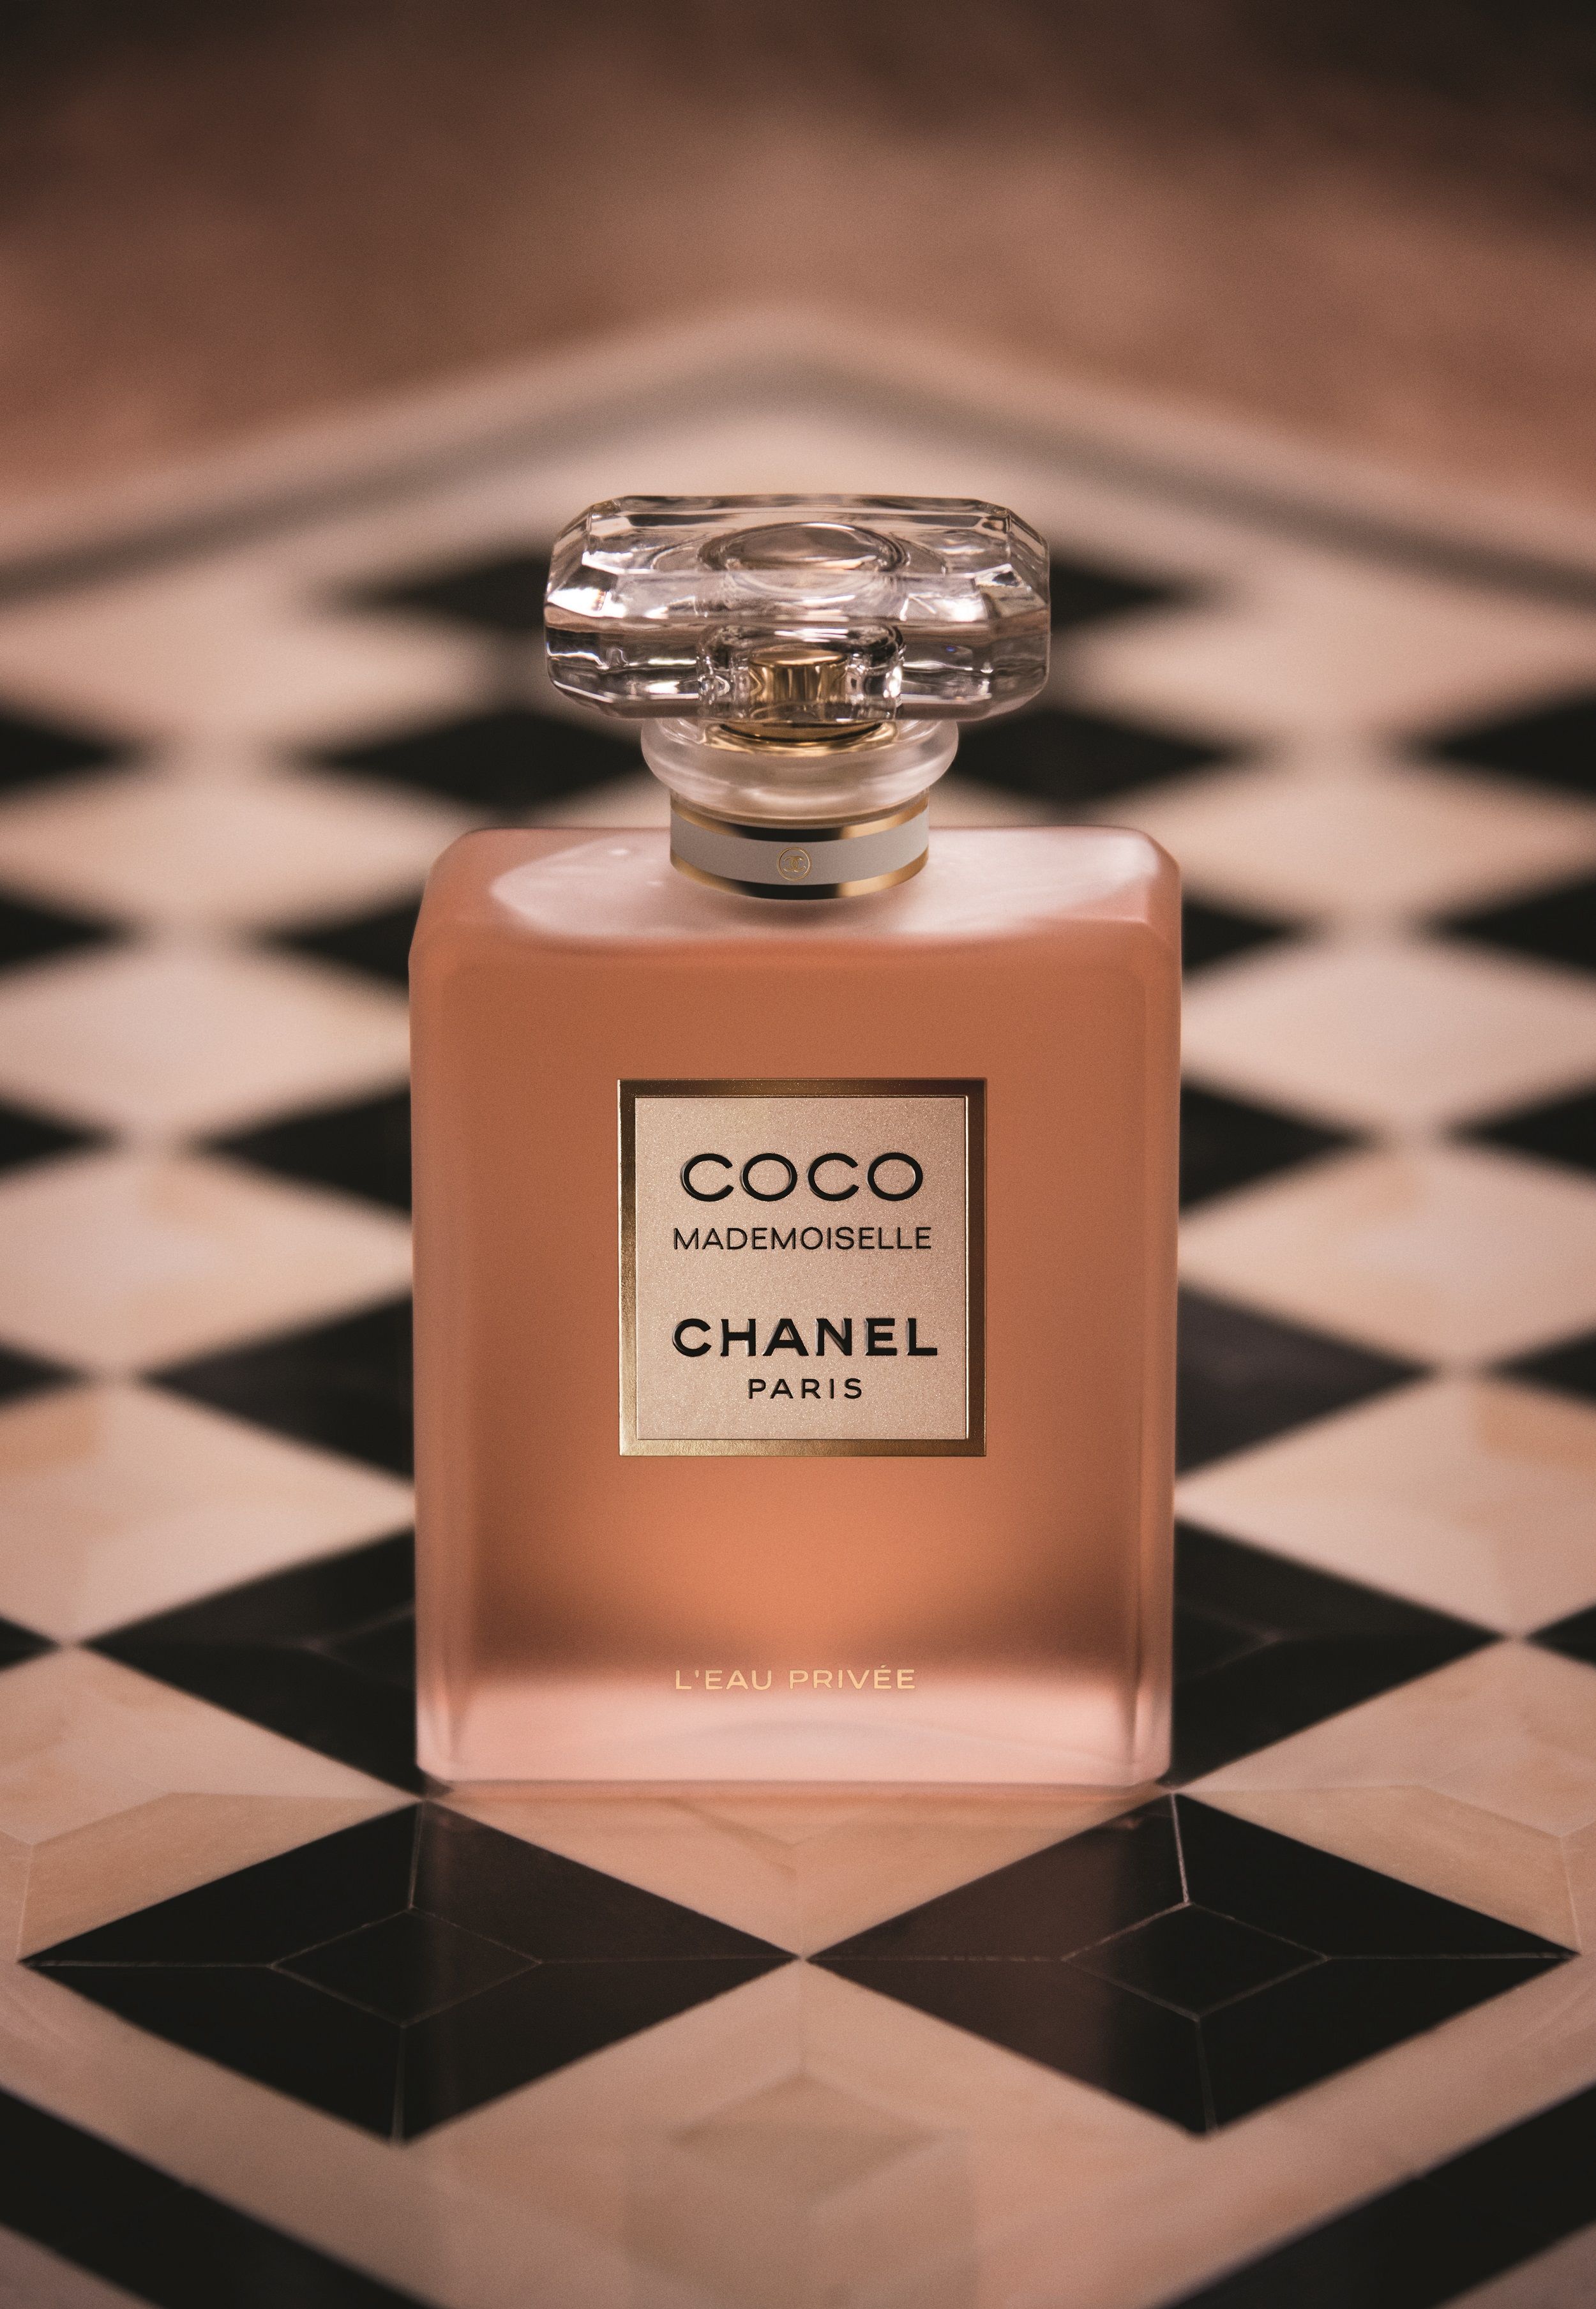 Coco Mademoiselle L'Eau Privée Chanel parfum un nou parfum de dama 2020